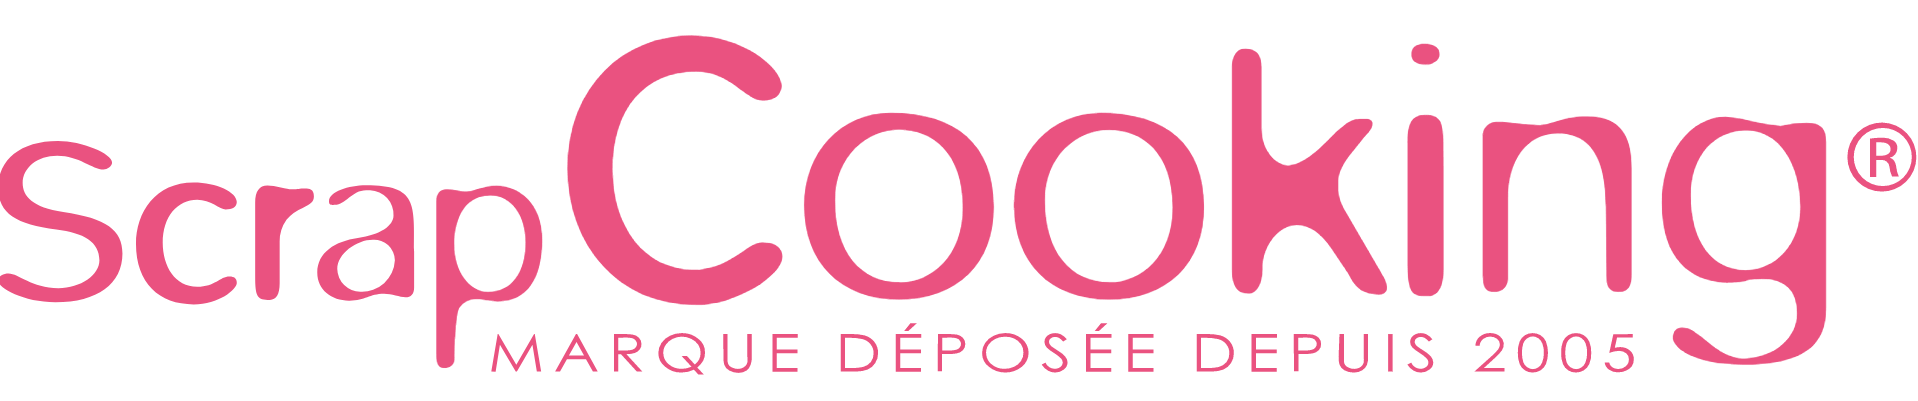 Logotype marque ScrapCooking